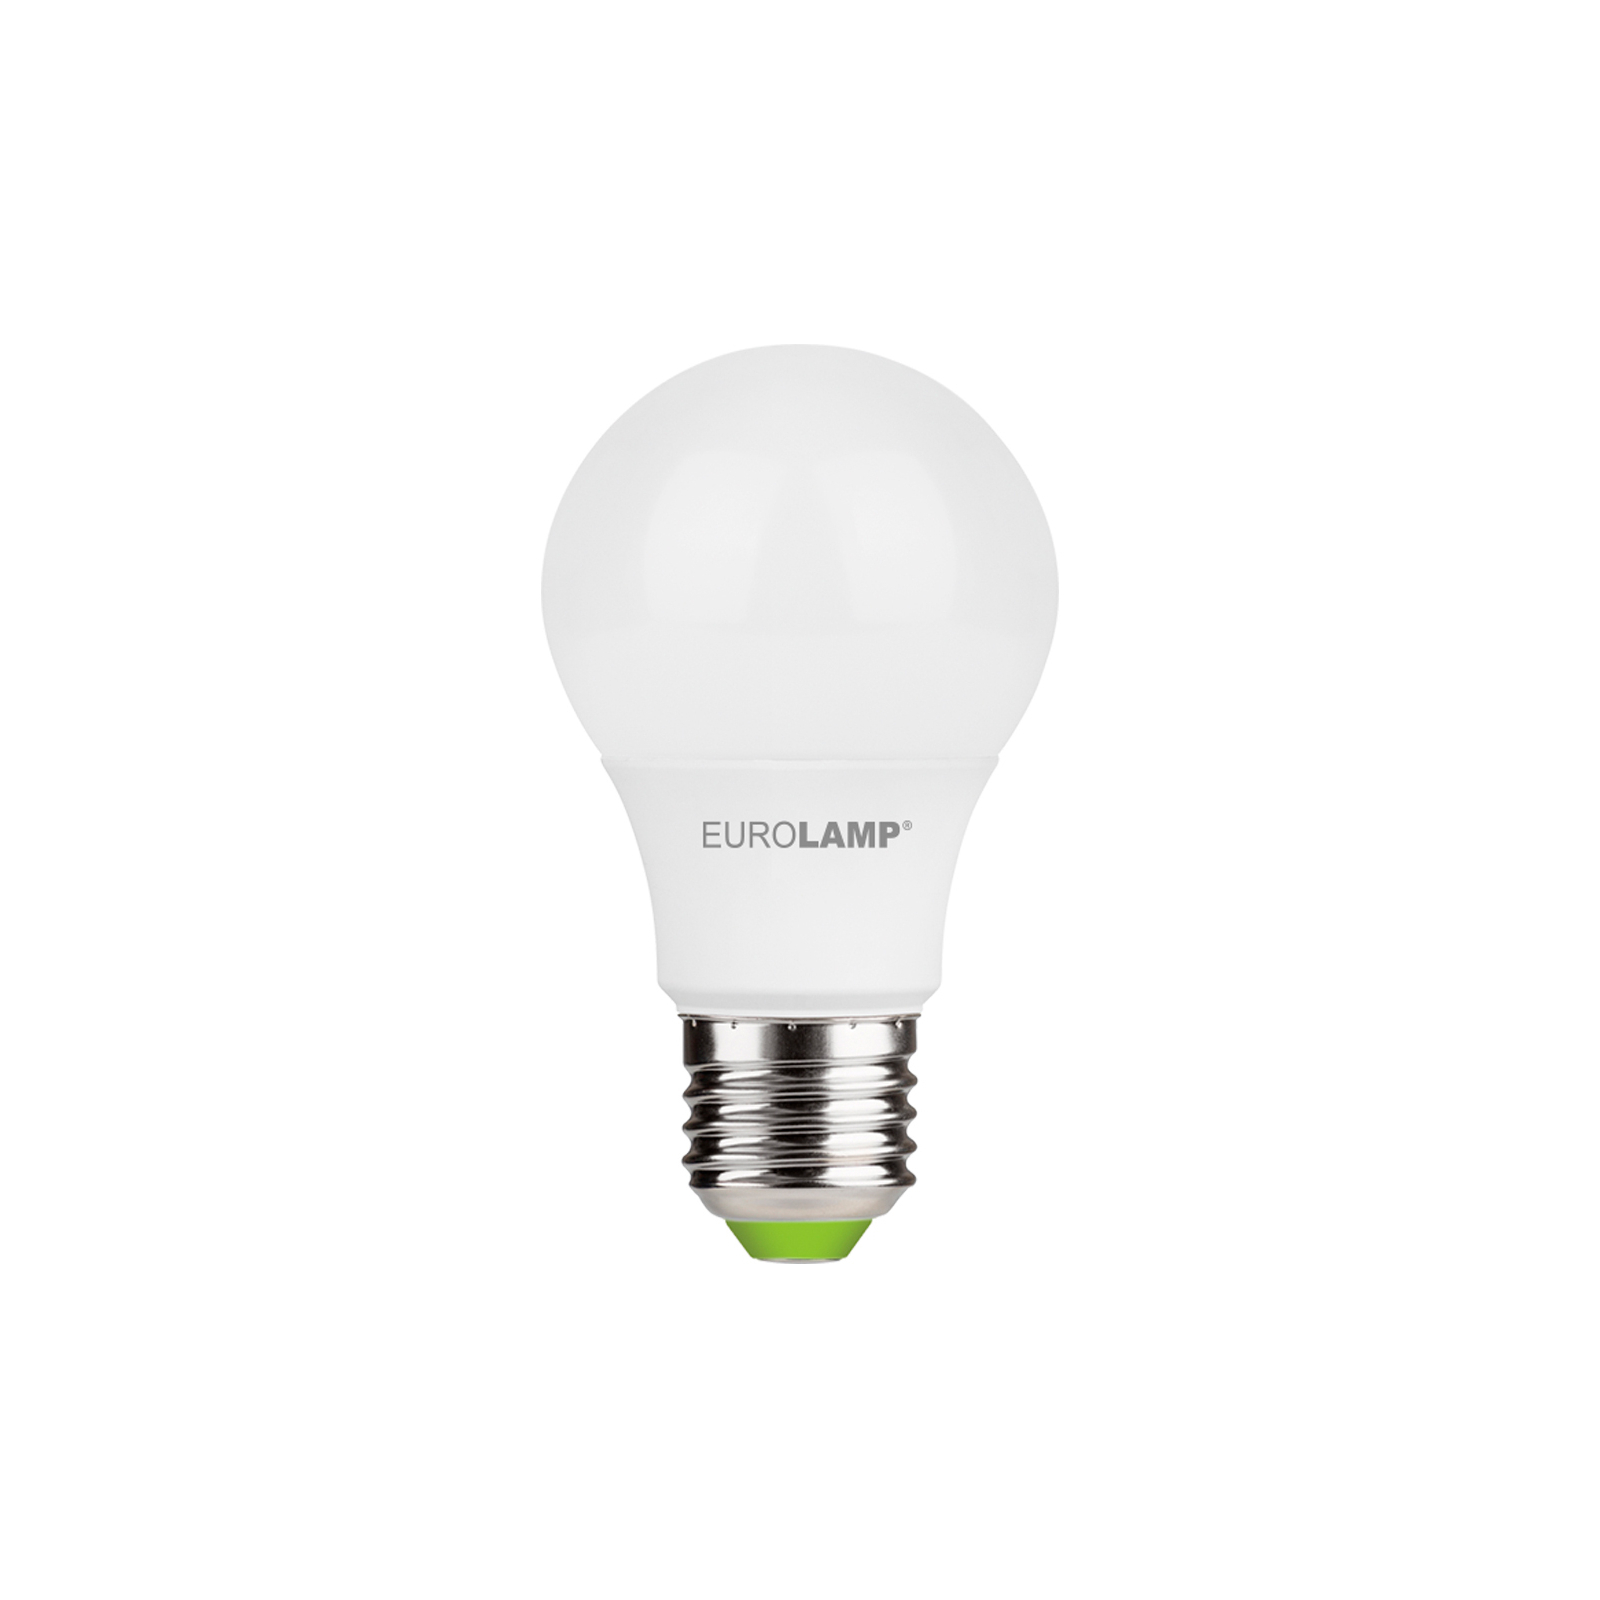 Лампочка Eurolamp LED A60 7W E27 4000K 220V акция 1+1 (MLP-LED-A60-07274(E)) зображення 2